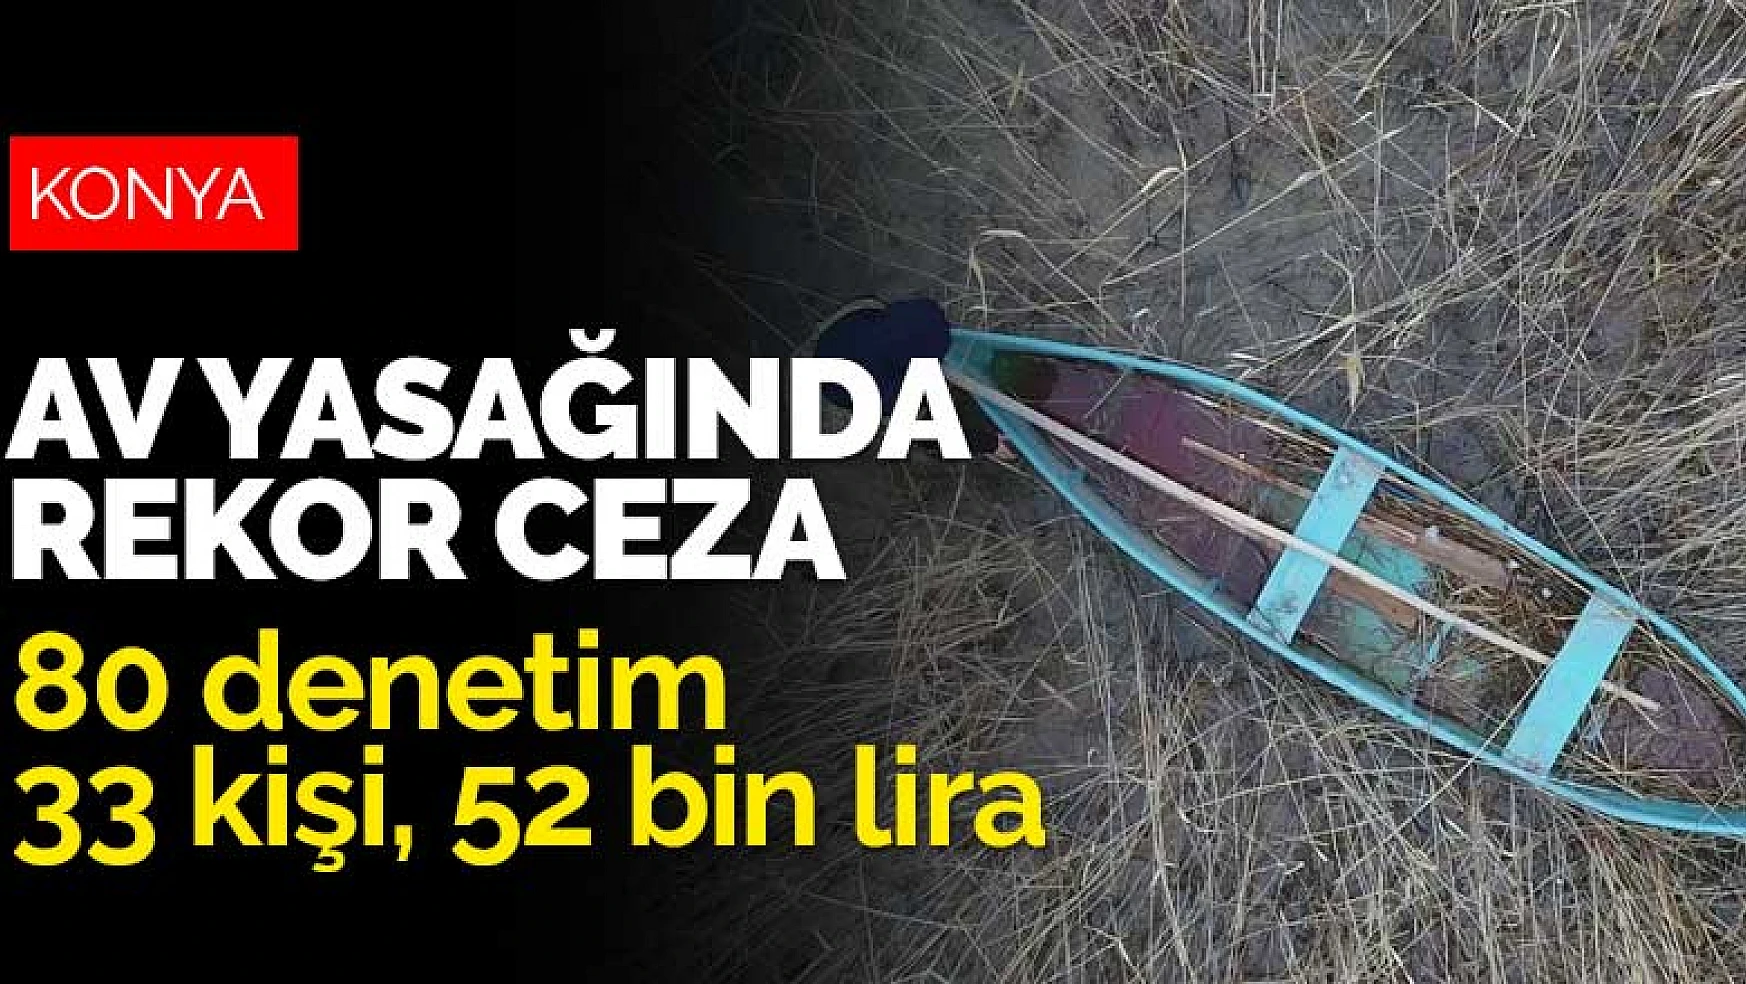 Beyşehir Gölü'nde av yasağında rekor ceza! 80 denetimde 52 bin lira